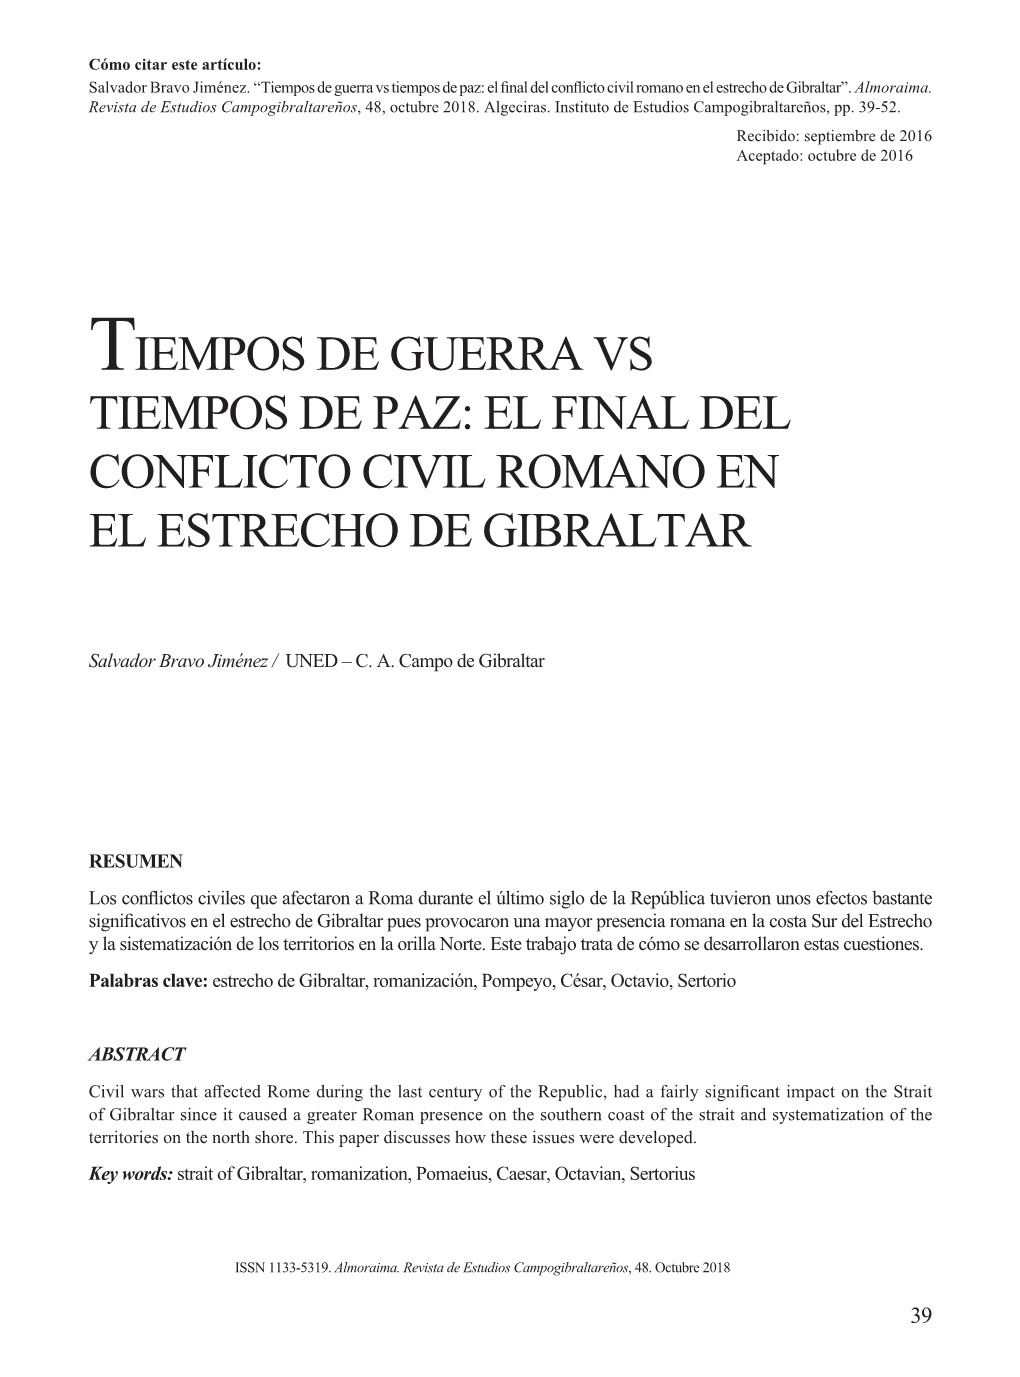 El Final Del Conflicto Civil Romano En El Estrecho De Gibraltar”.Almoraima